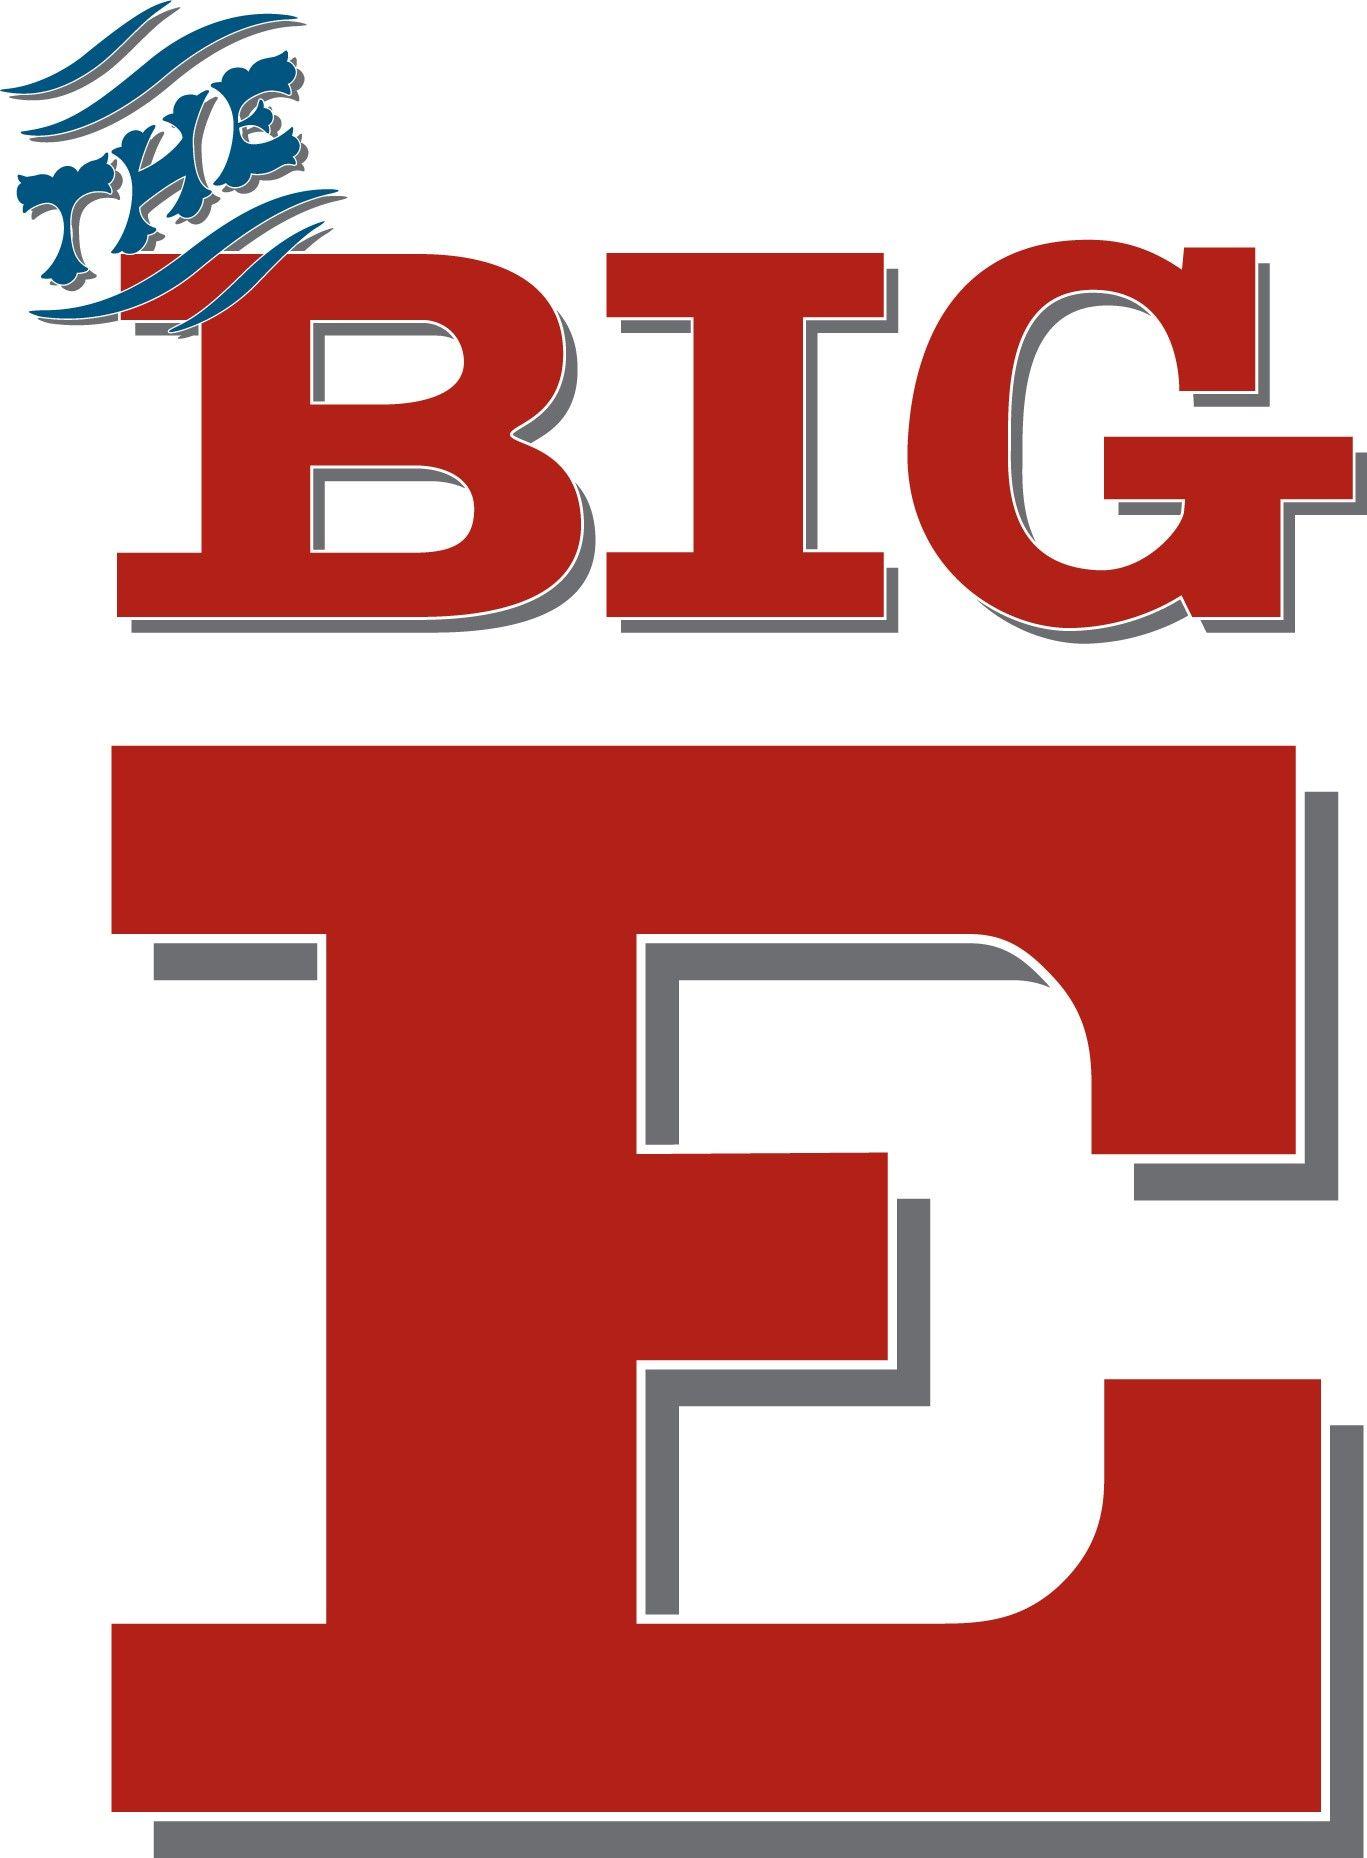 Big E Logo - 2018 9 15 The Big E